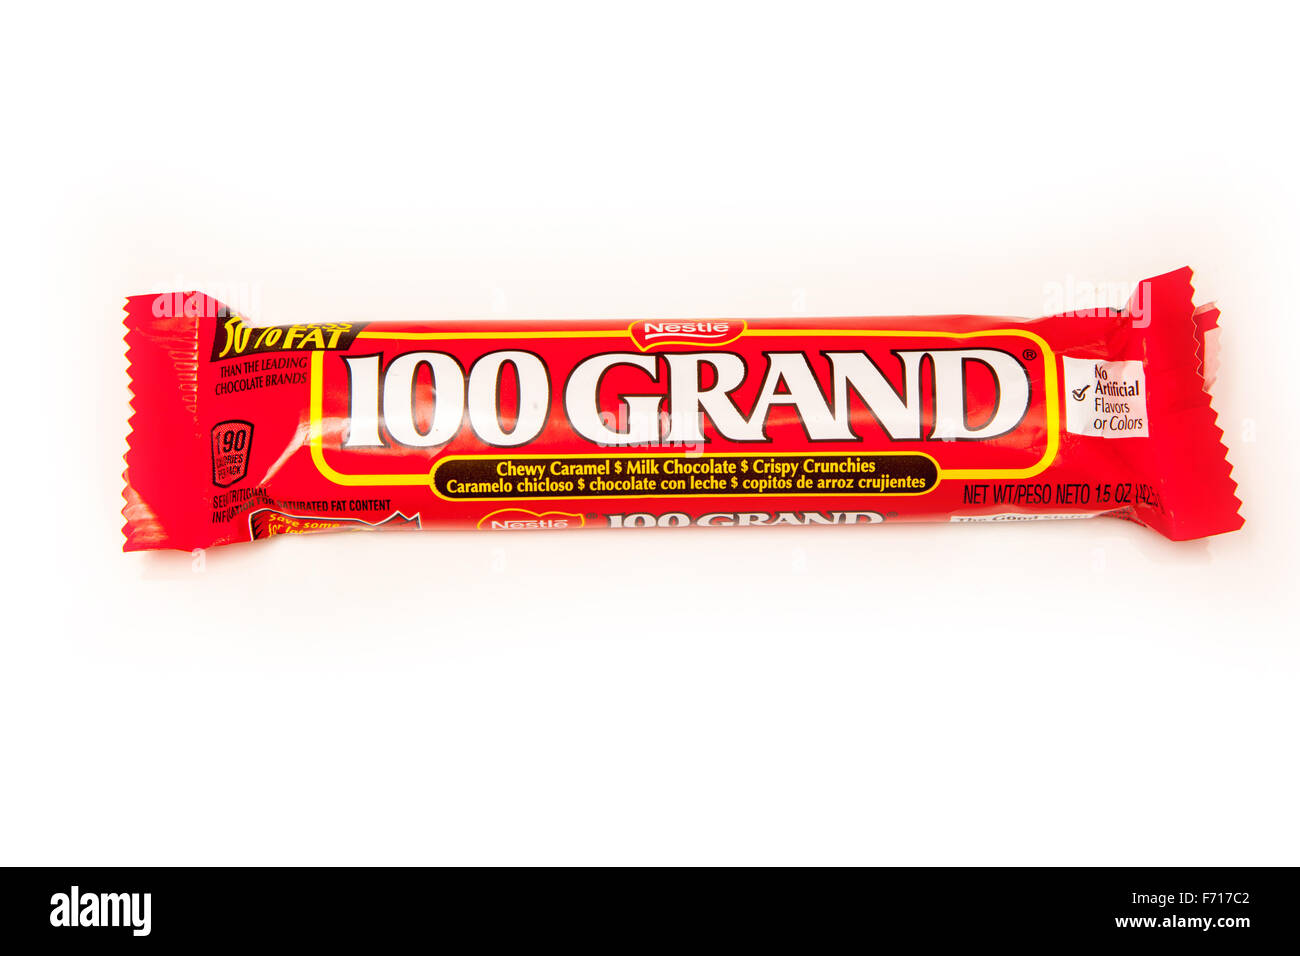 American candy 100 Grand Bar, ein Schokoriegel von Nestlé gemacht. Isoliert auf einem weißen Studio-Hintergrund. Stockfoto